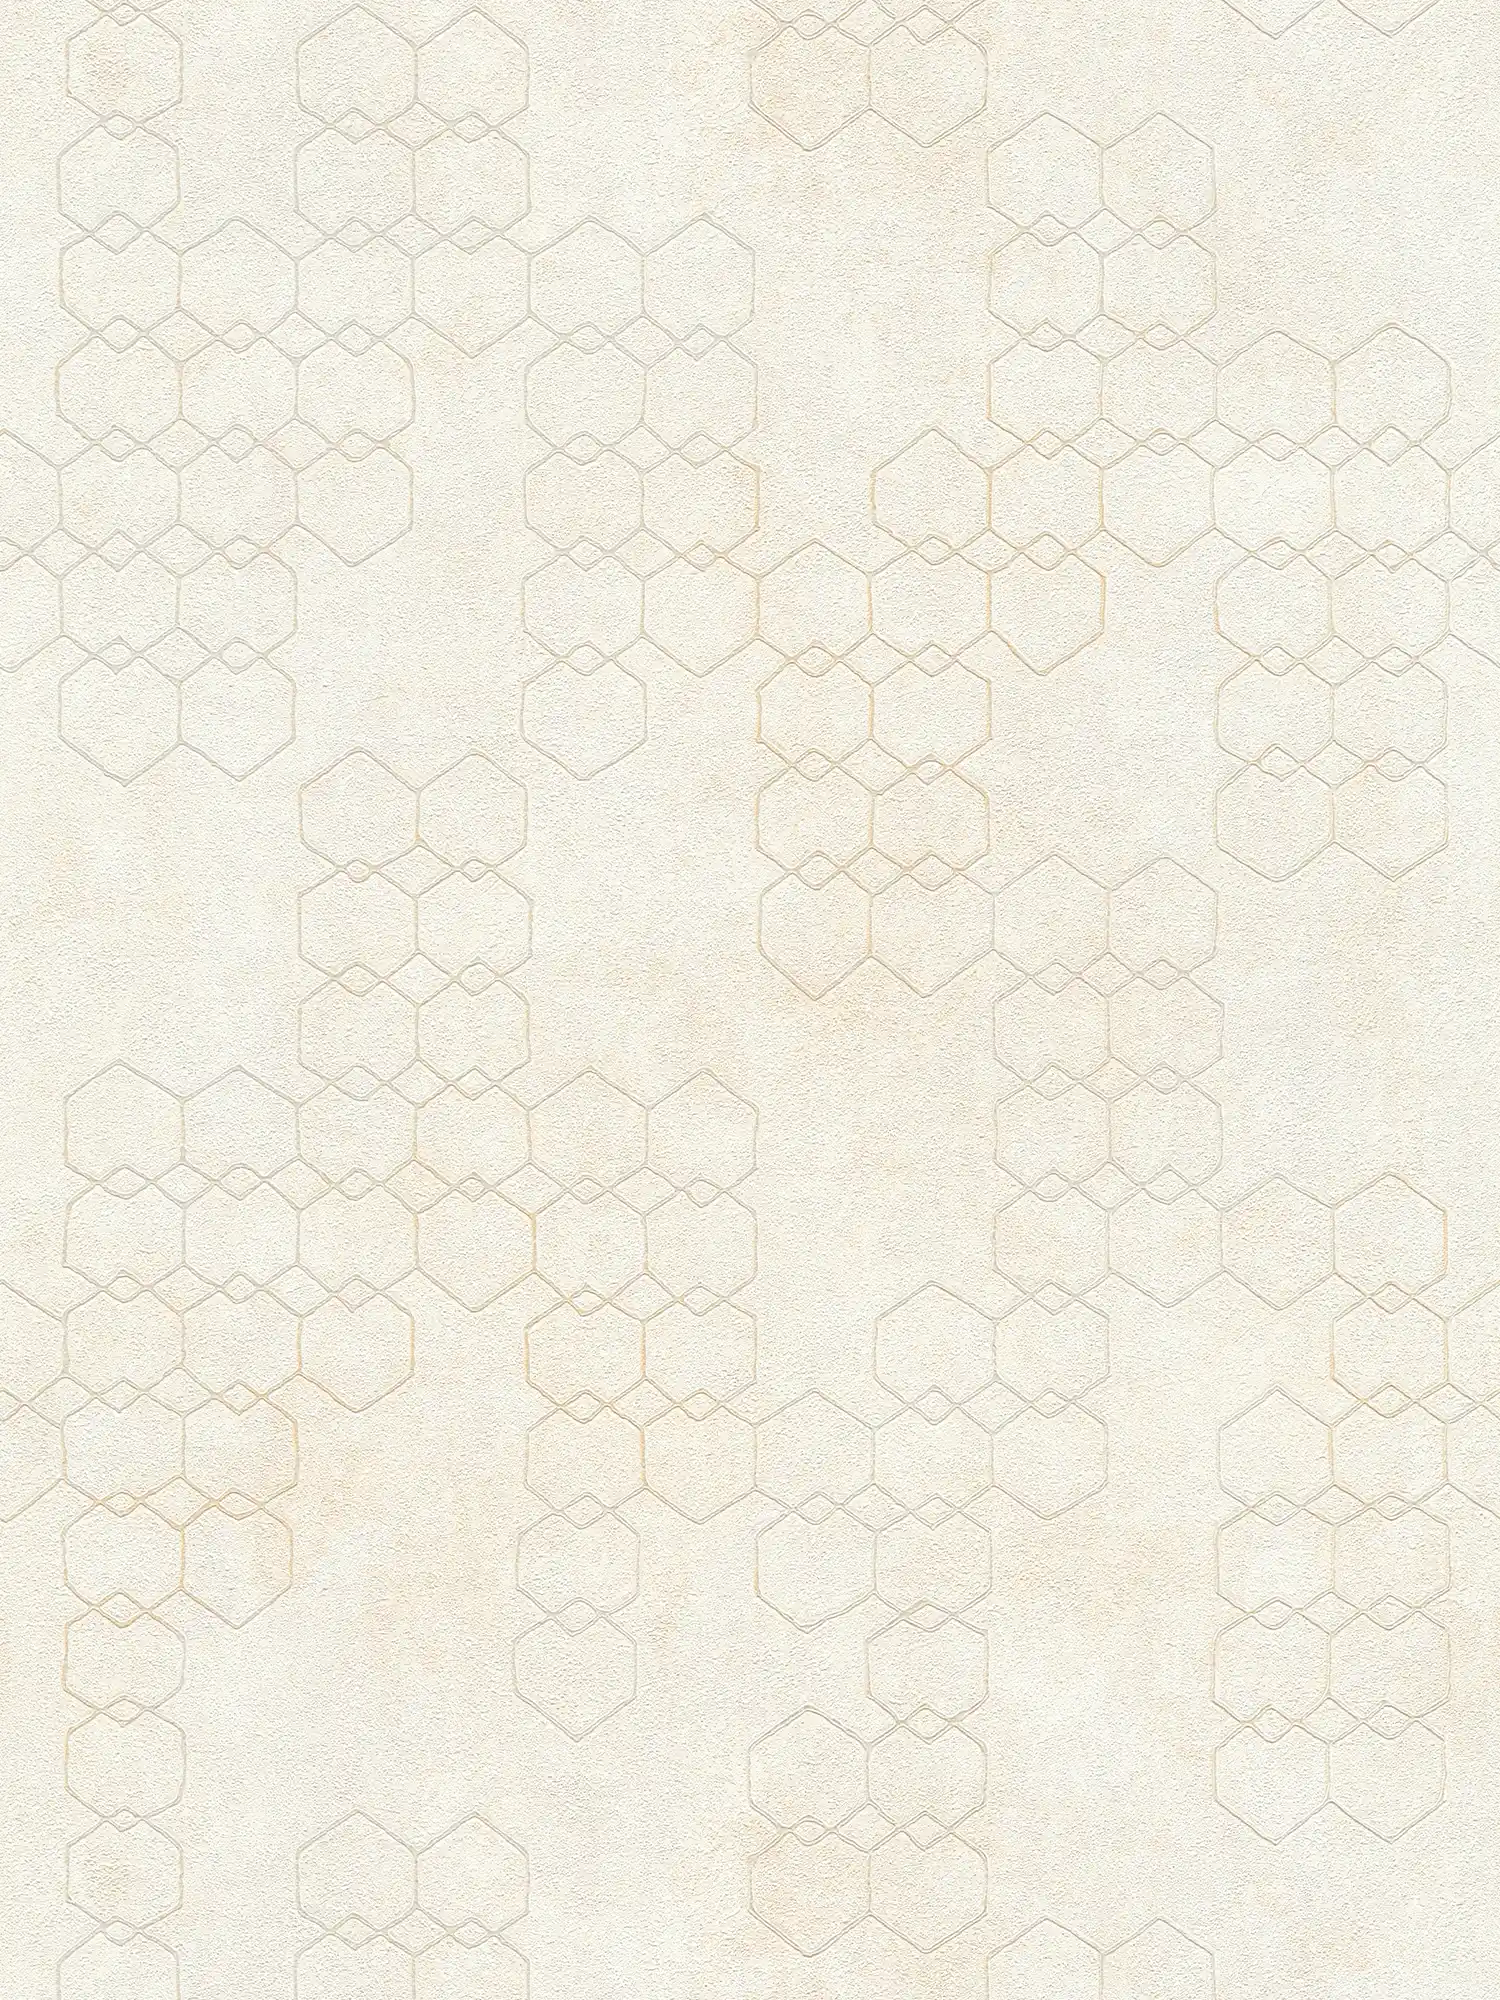 Carta da parati con motivi geometrici in stile industriale - crema, grigio, bianco
